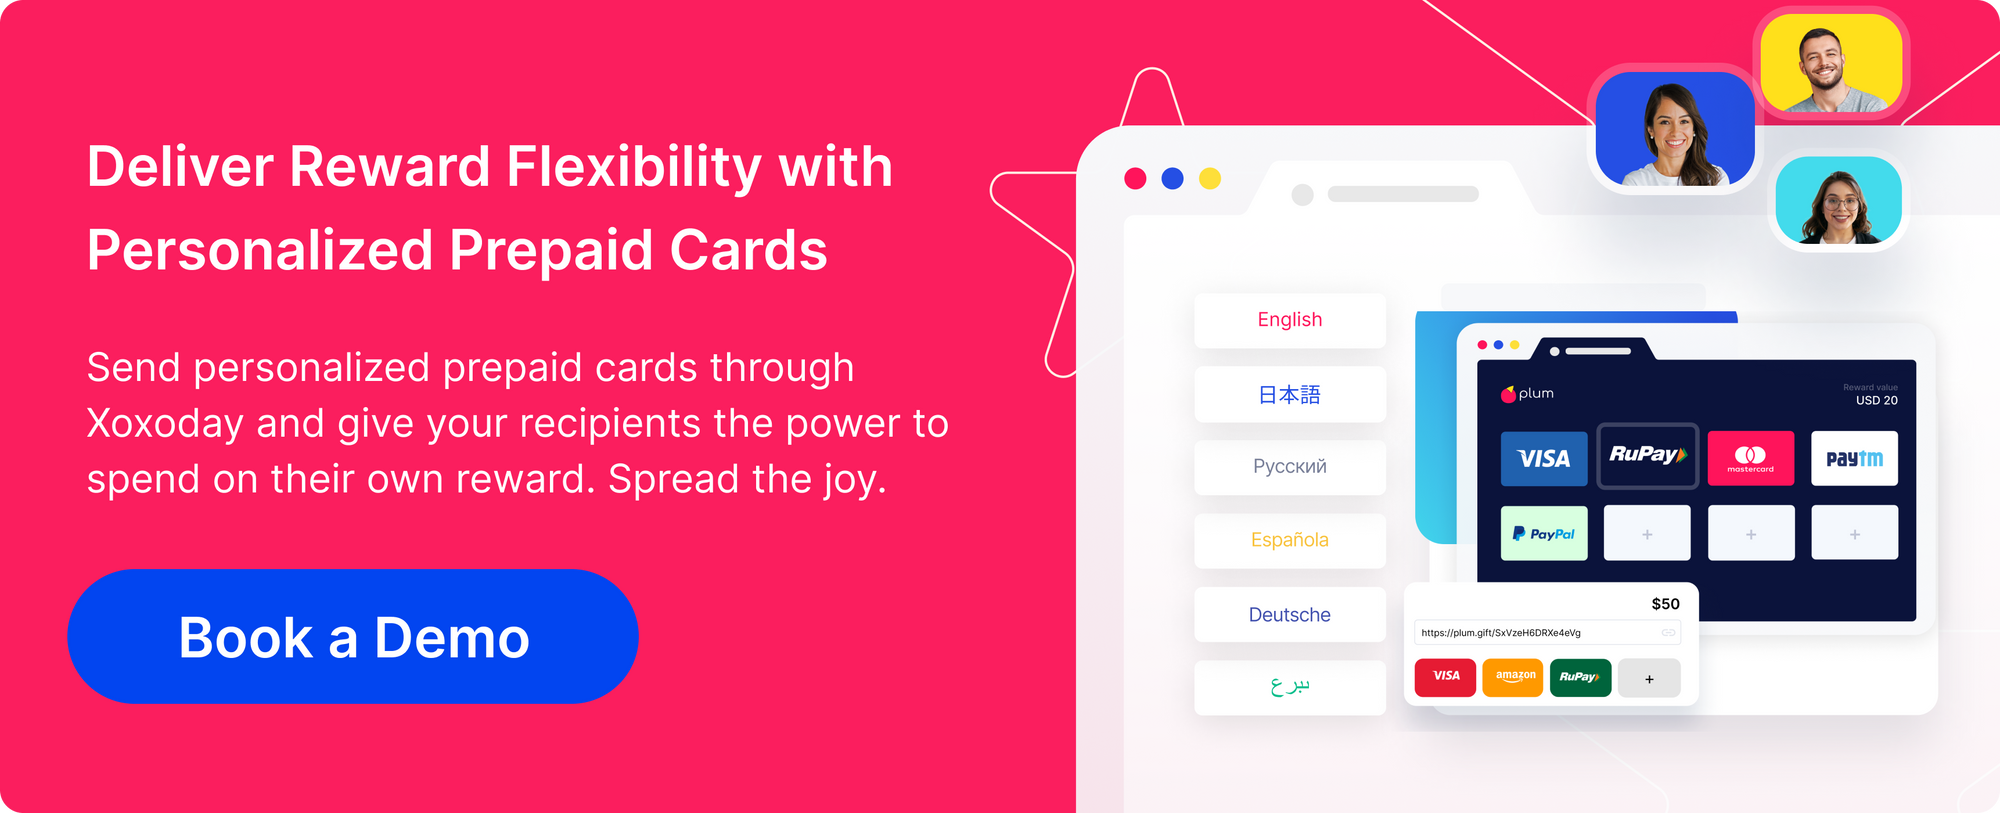 Offrite la flessibilità dei premi con carte prepagate personalizzate